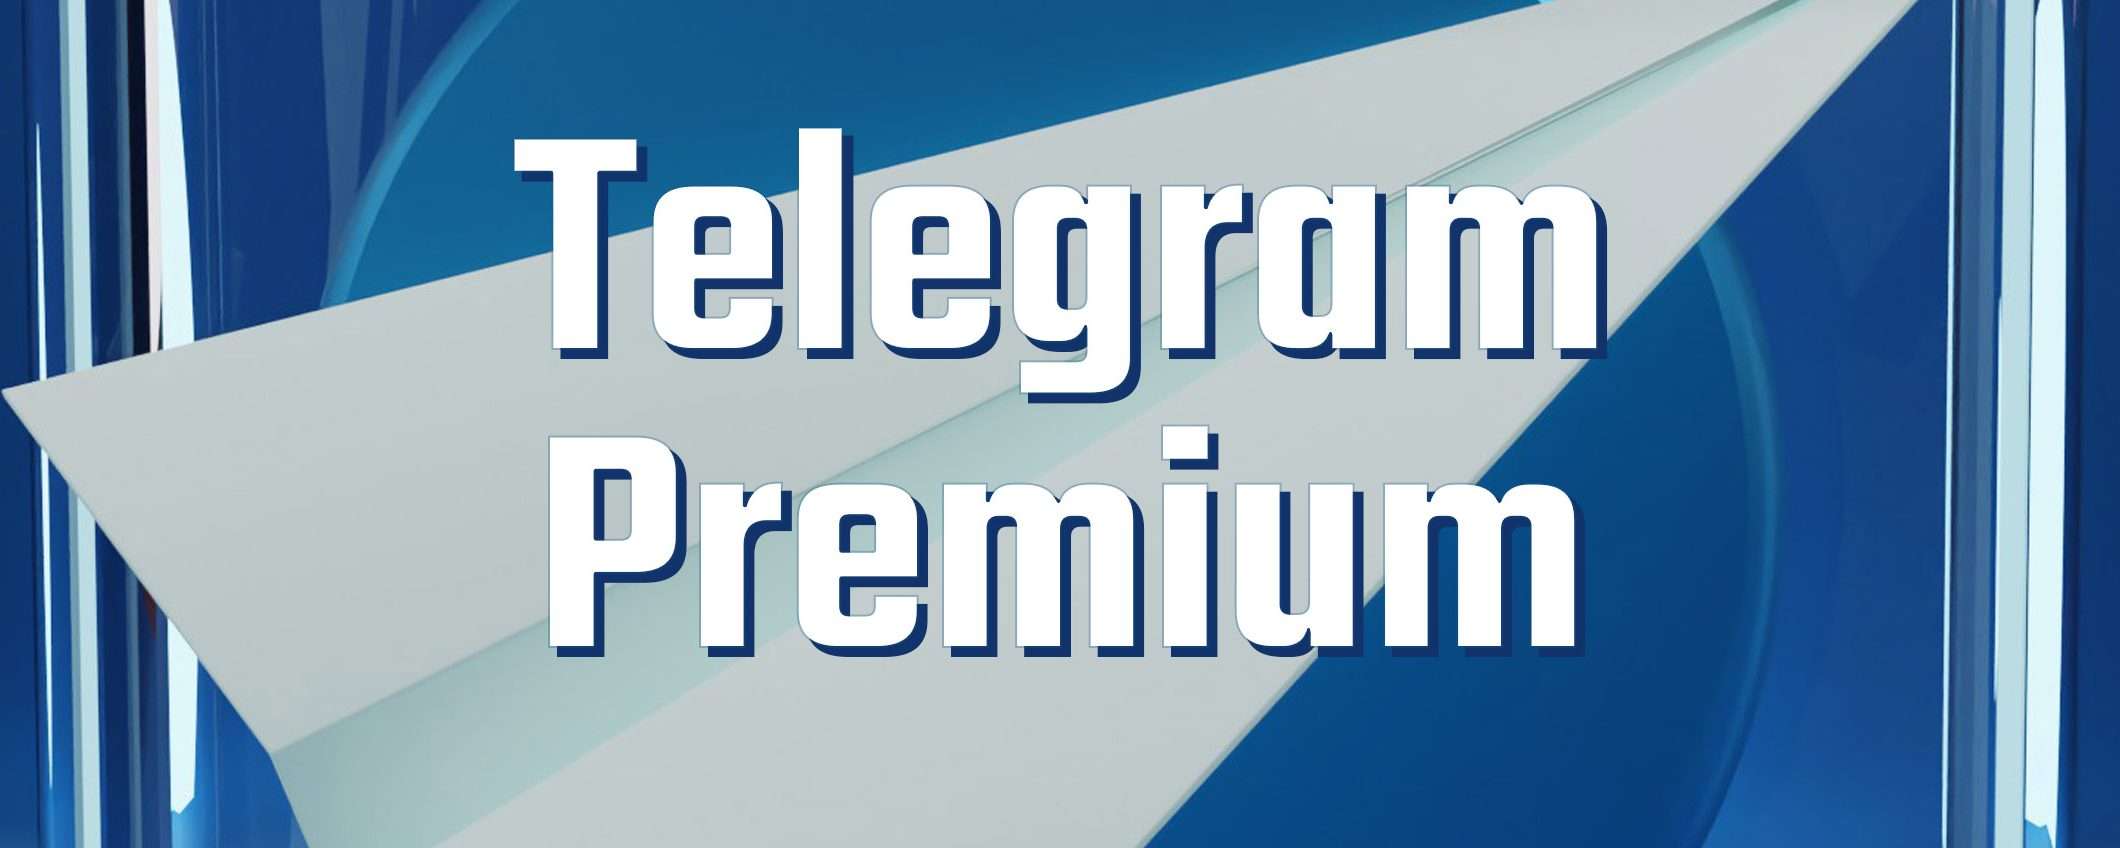 Telegram Premium: tutti i dettagli sull'abbonamento